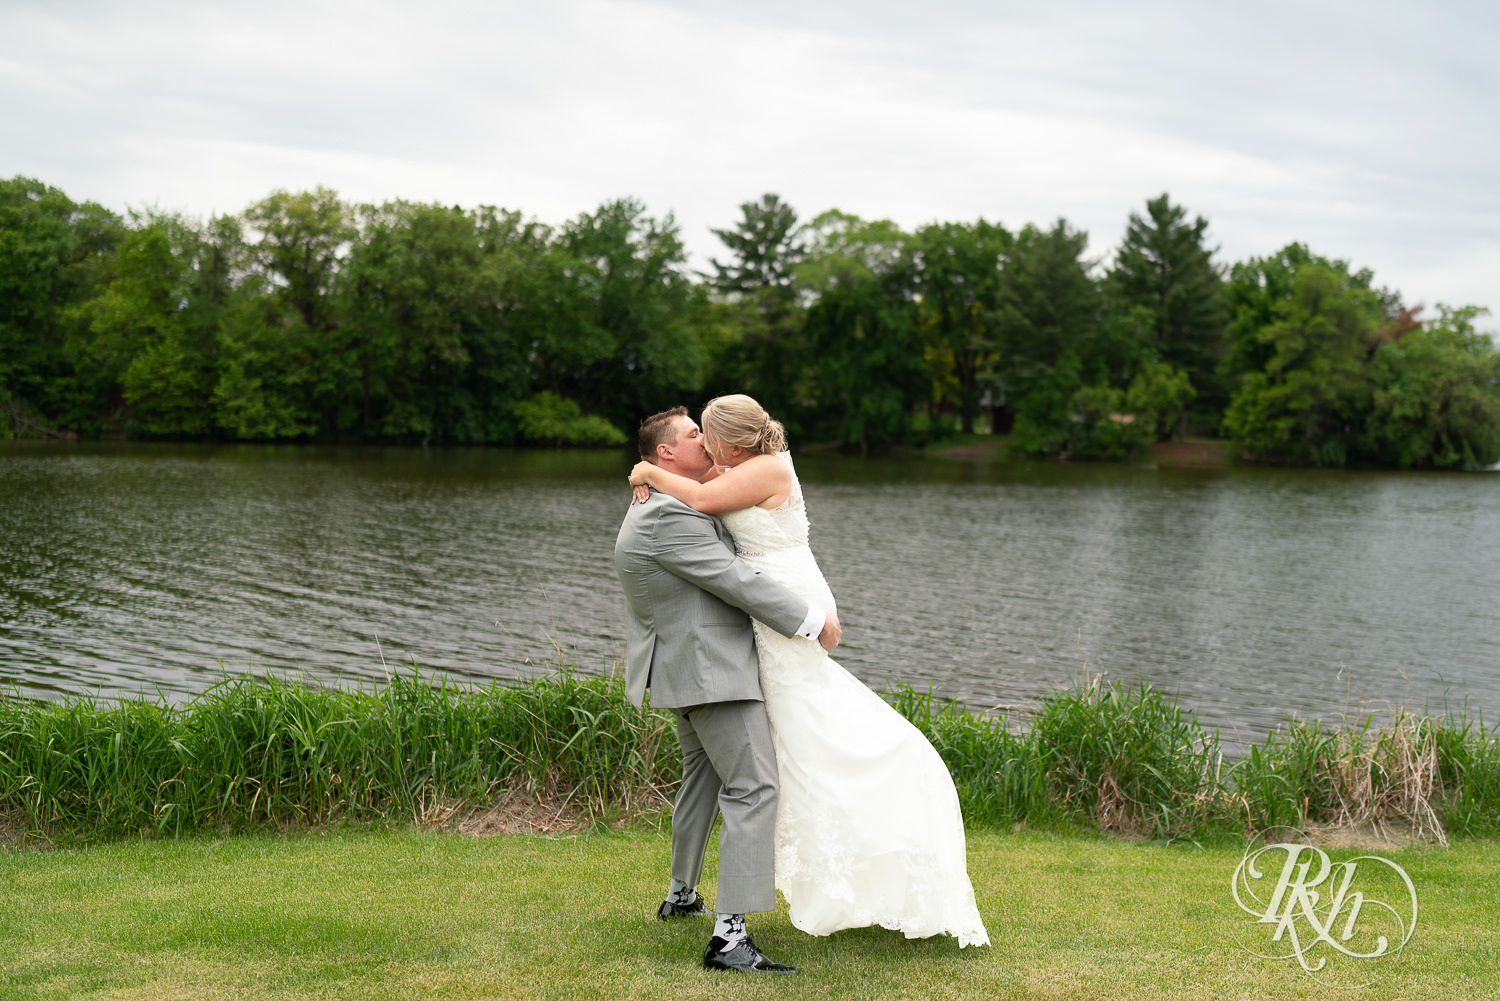 Bride and groom kiss at Barn at Mirror Lake in Mondovi, Wisconsin.